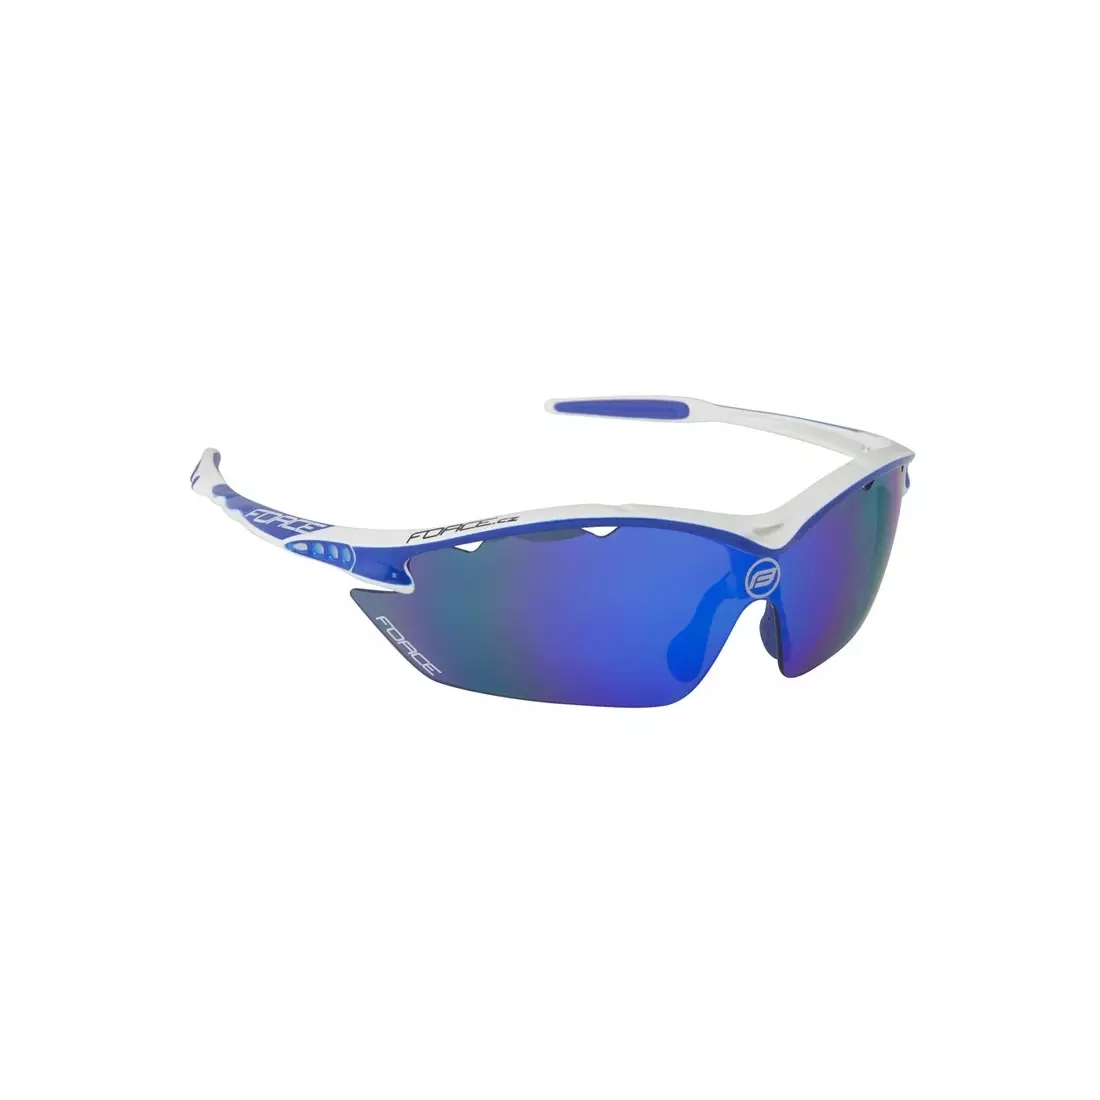 FORCE RON Sportovní/cyklistické brýle bílá a modrá 91010 vyměnitelná skla